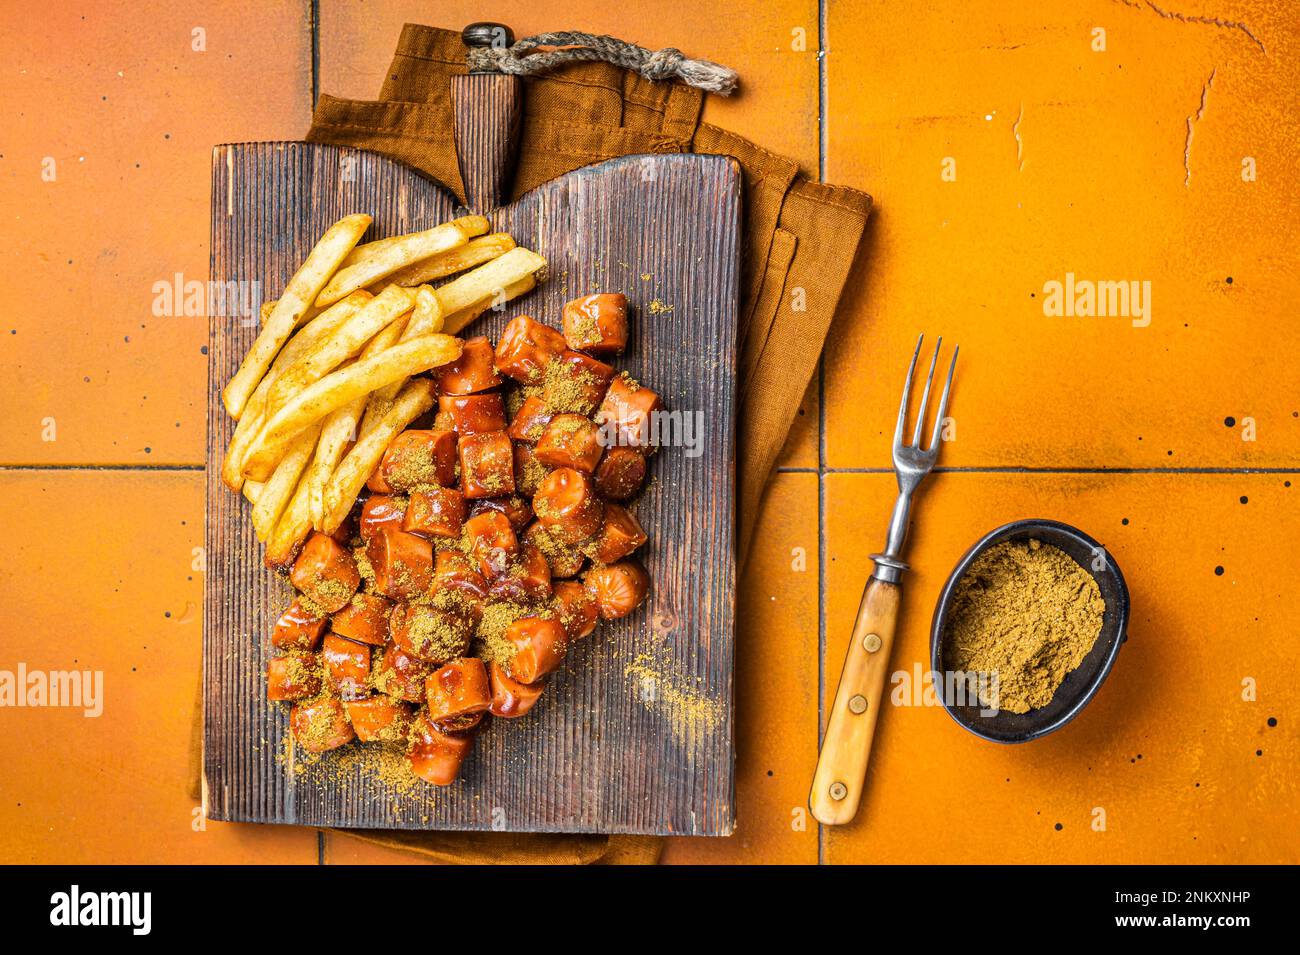 Repas currywurst à la saucisse au curry, curry wurst avec friture française servi sur une planche de bois. Arrière-plan orange. Vue de dessus. Banque D'Images